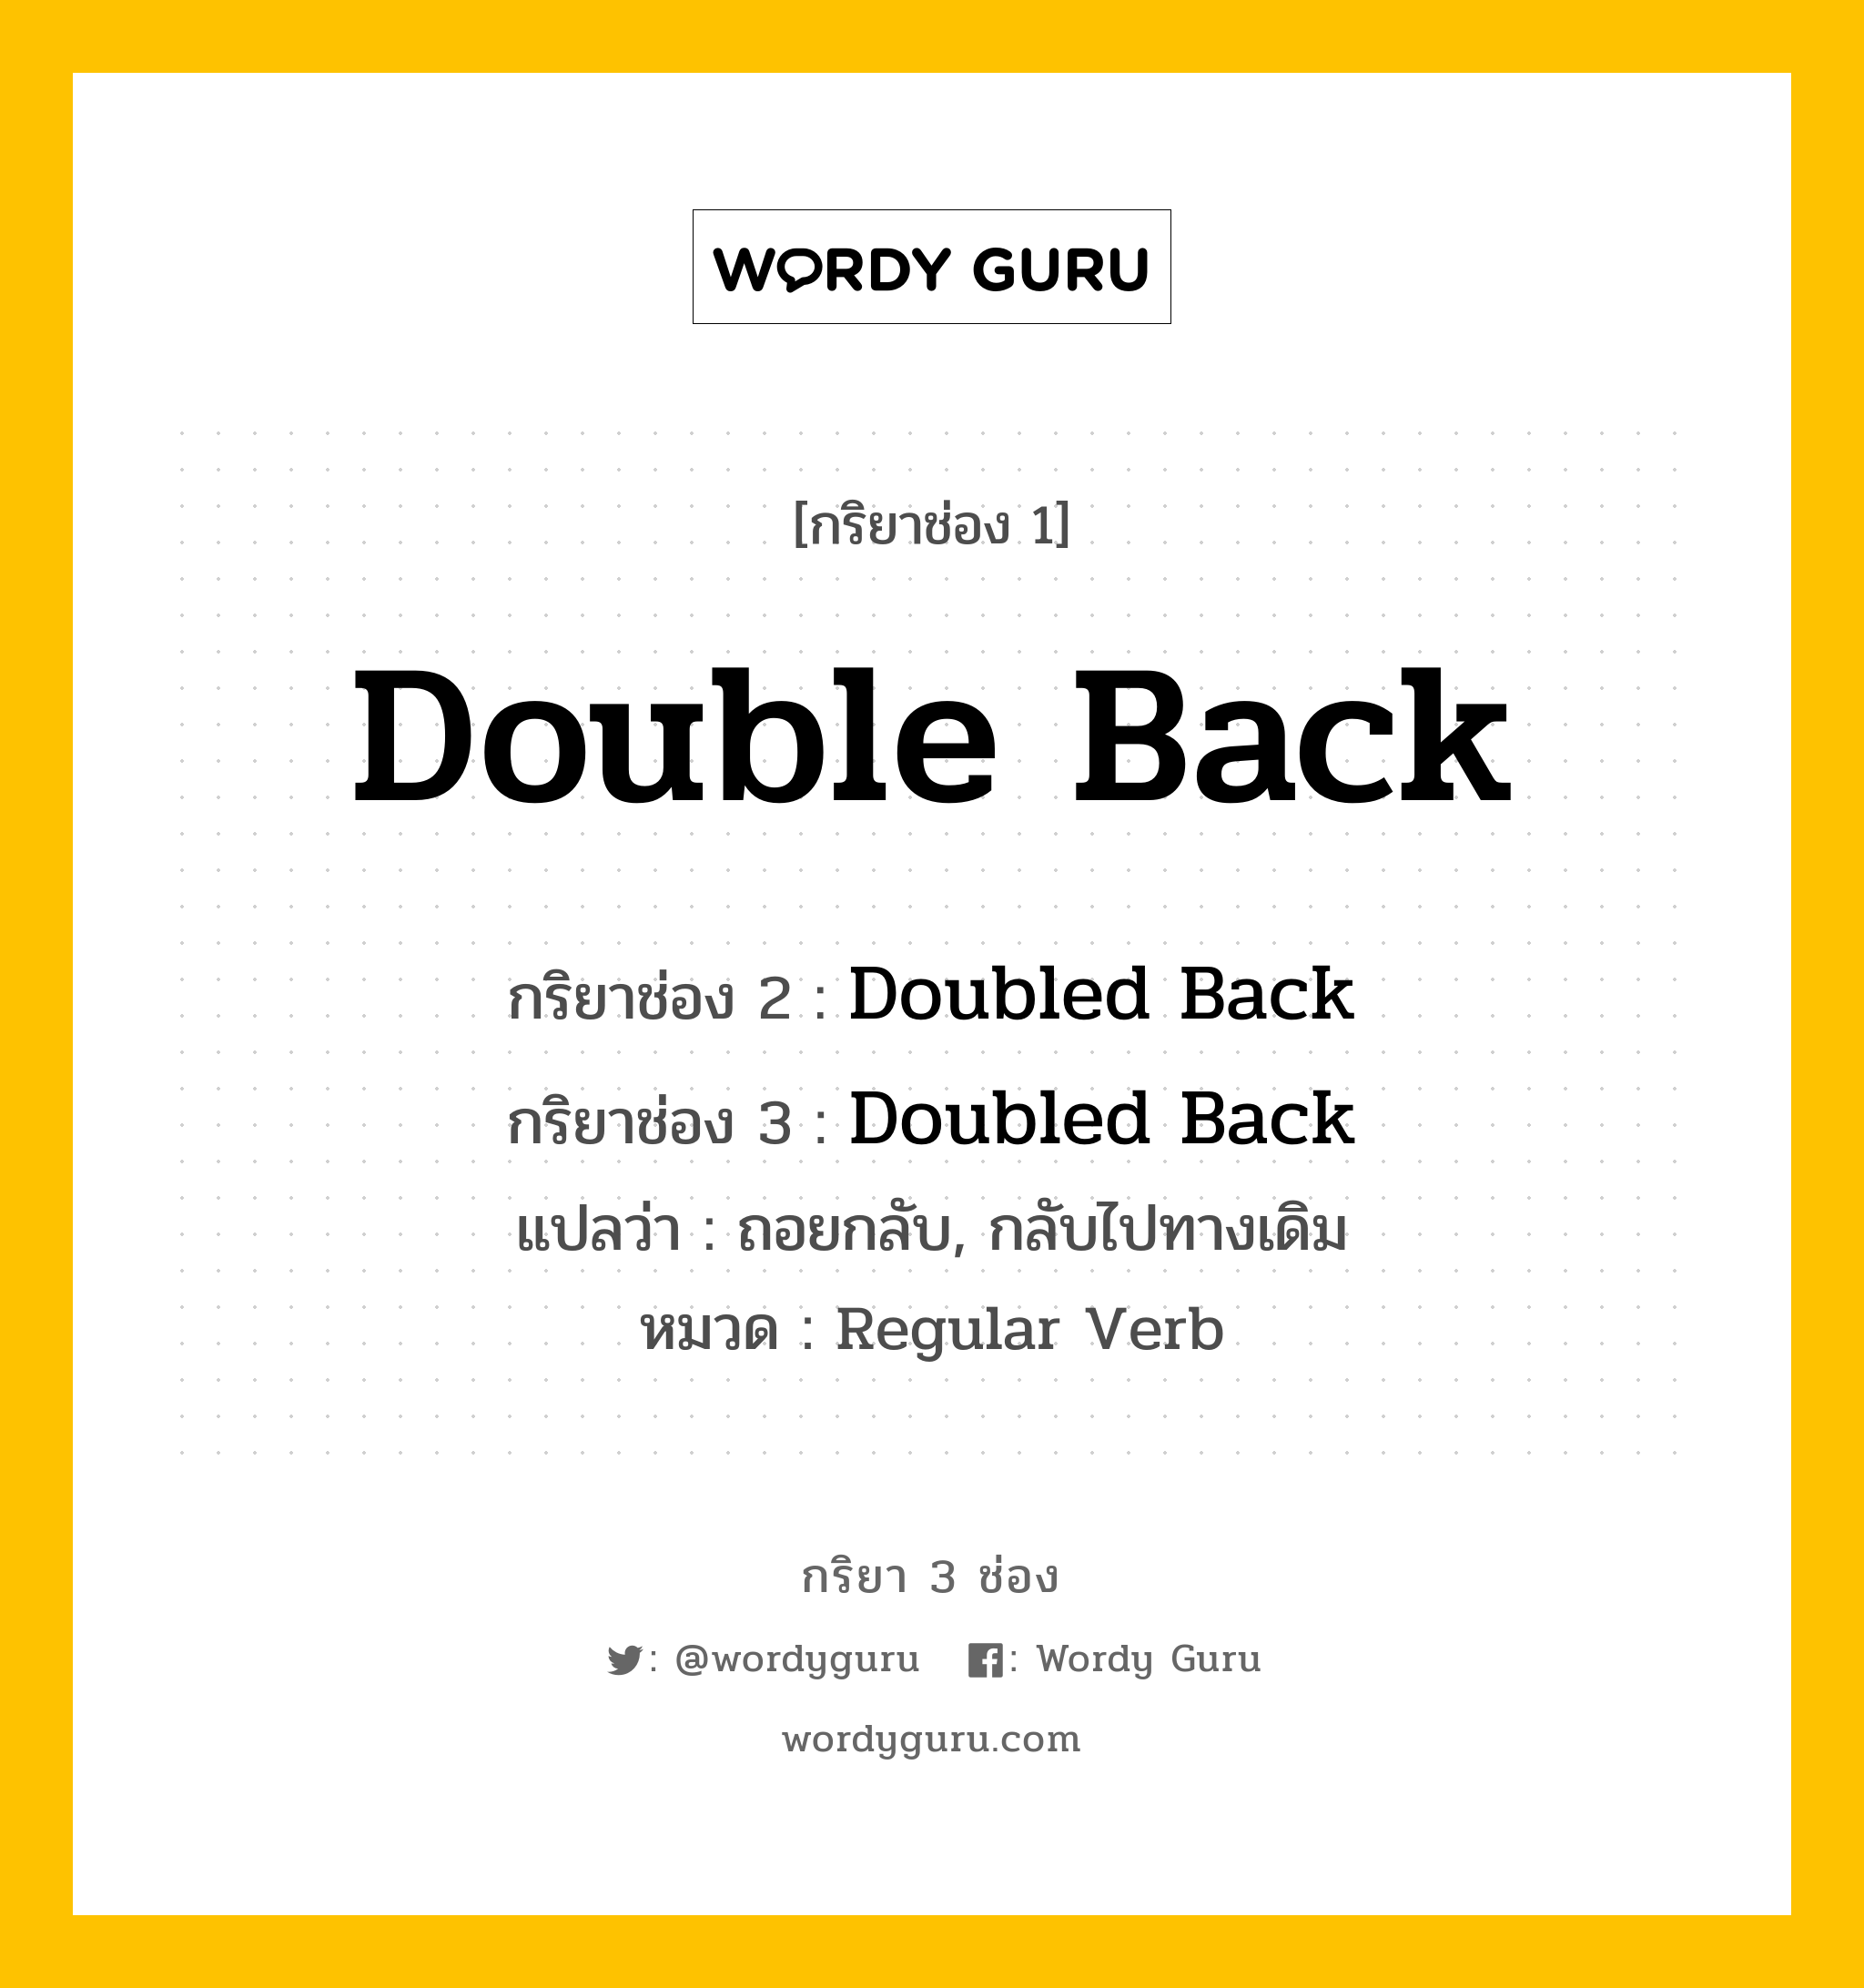 กริยา 3 ช่อง: Double Back ช่อง 2 Double Back ช่อง 3 คืออะไร, กริยาช่อง 1 Double Back กริยาช่อง 2 Doubled Back กริยาช่อง 3 Doubled Back แปลว่า ถอยกลับ, กลับไปทางเดิม หมวด Regular Verb หมวด Regular Verb